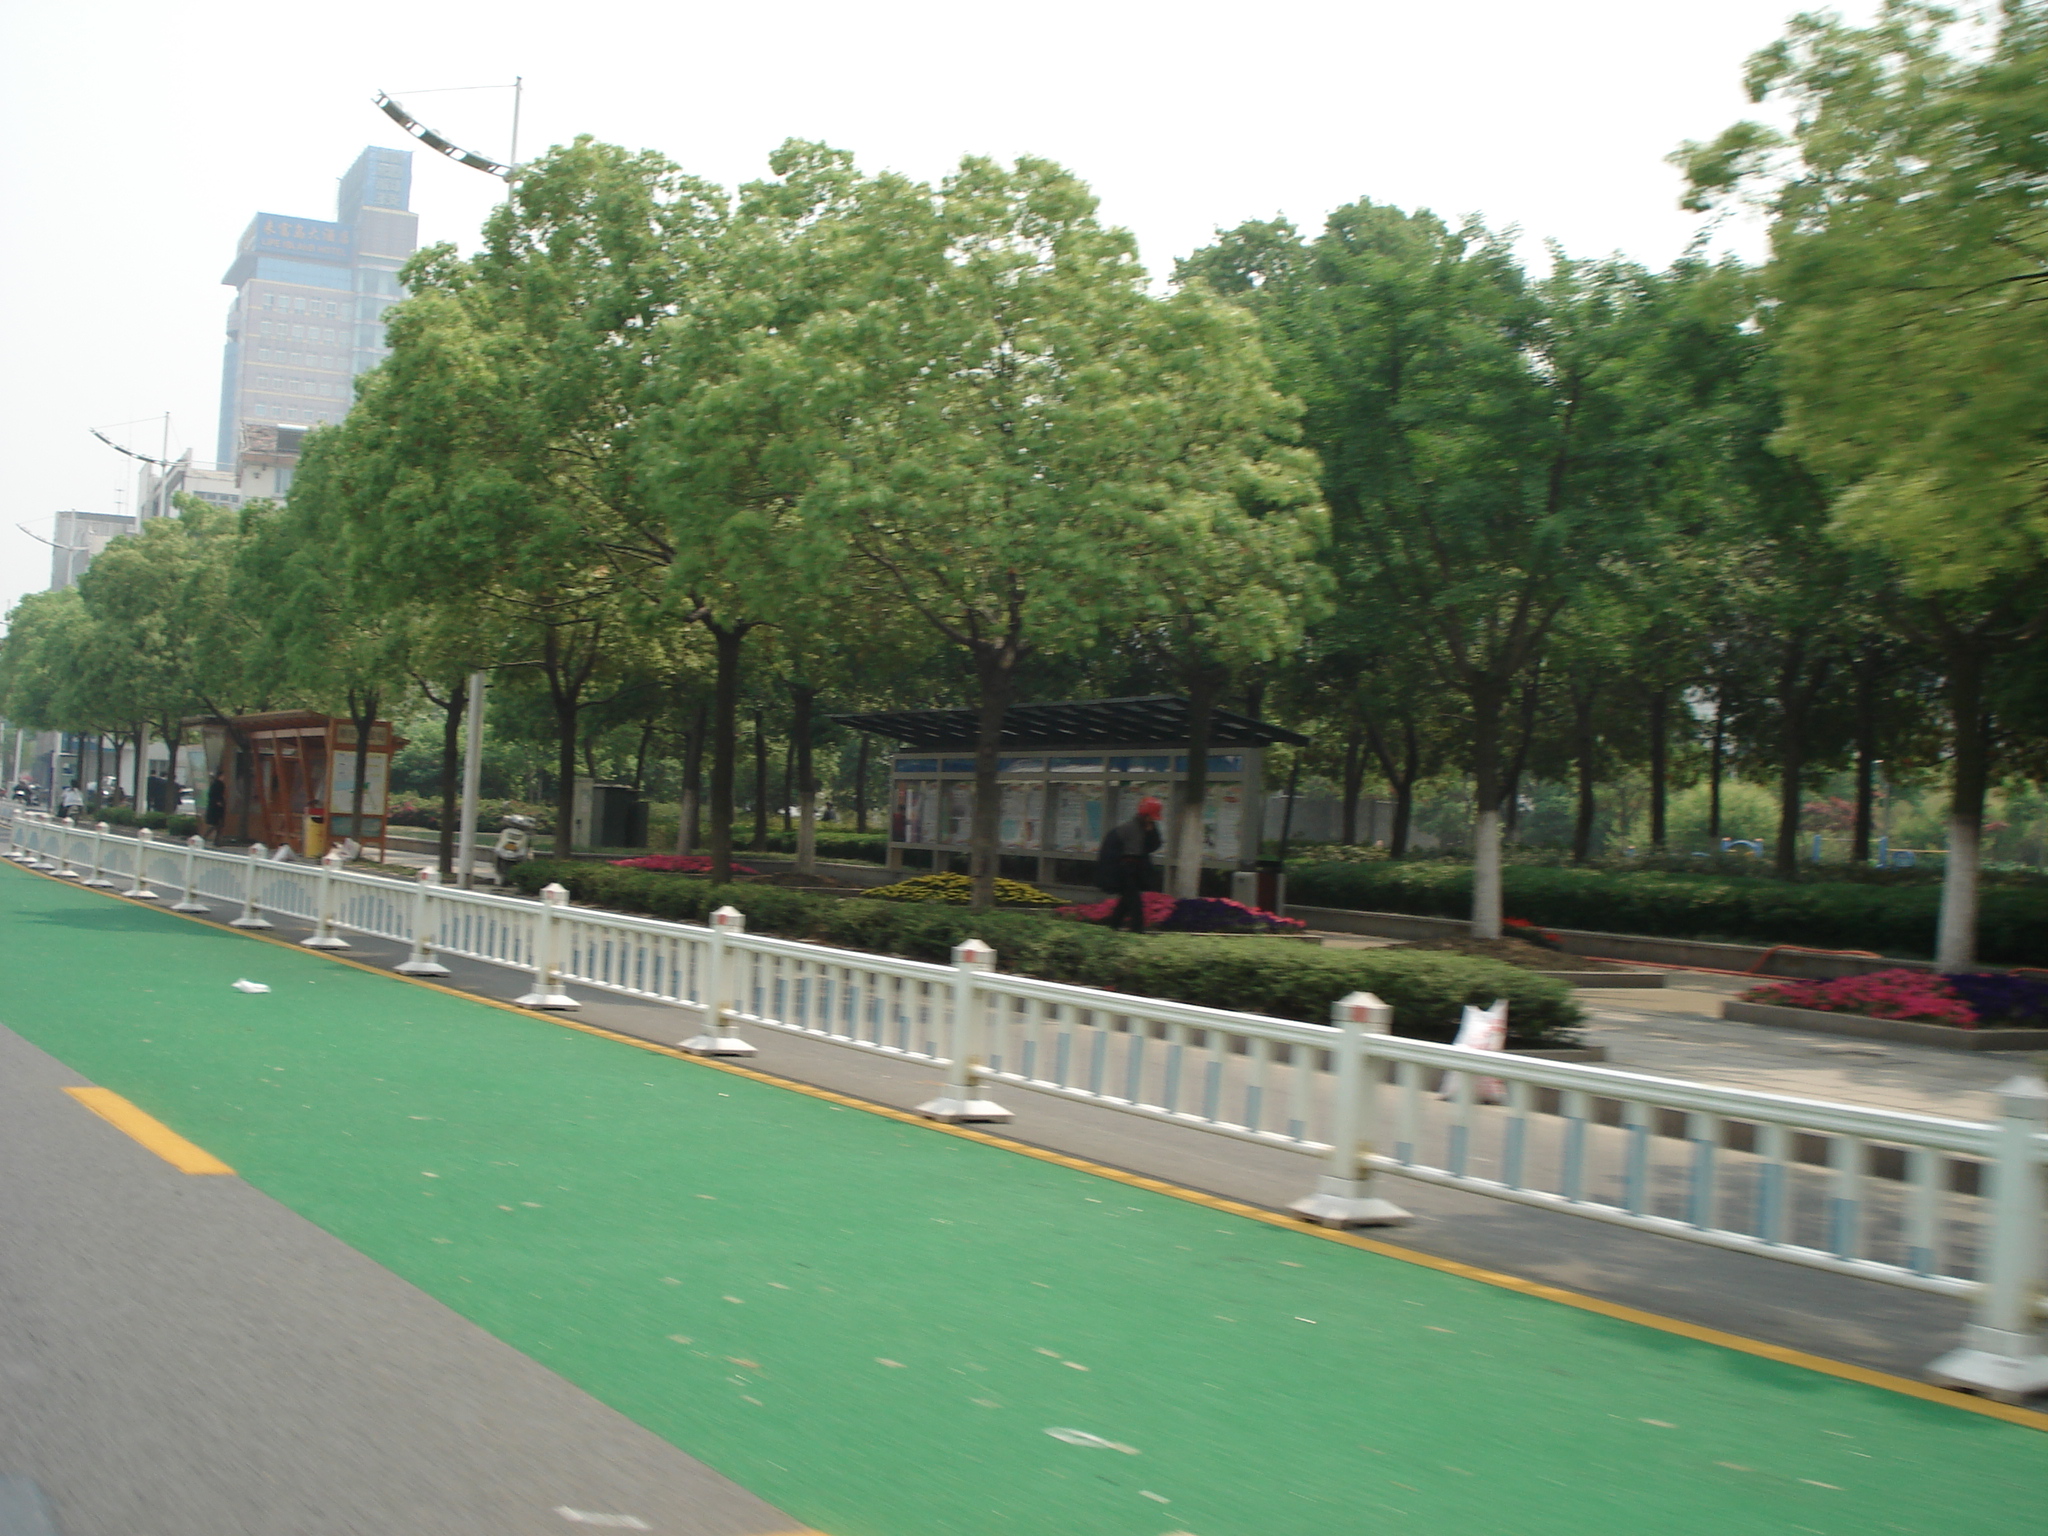 原装彩色防滑路面价格_口碑好的-上海柯路美道路工程有限公司